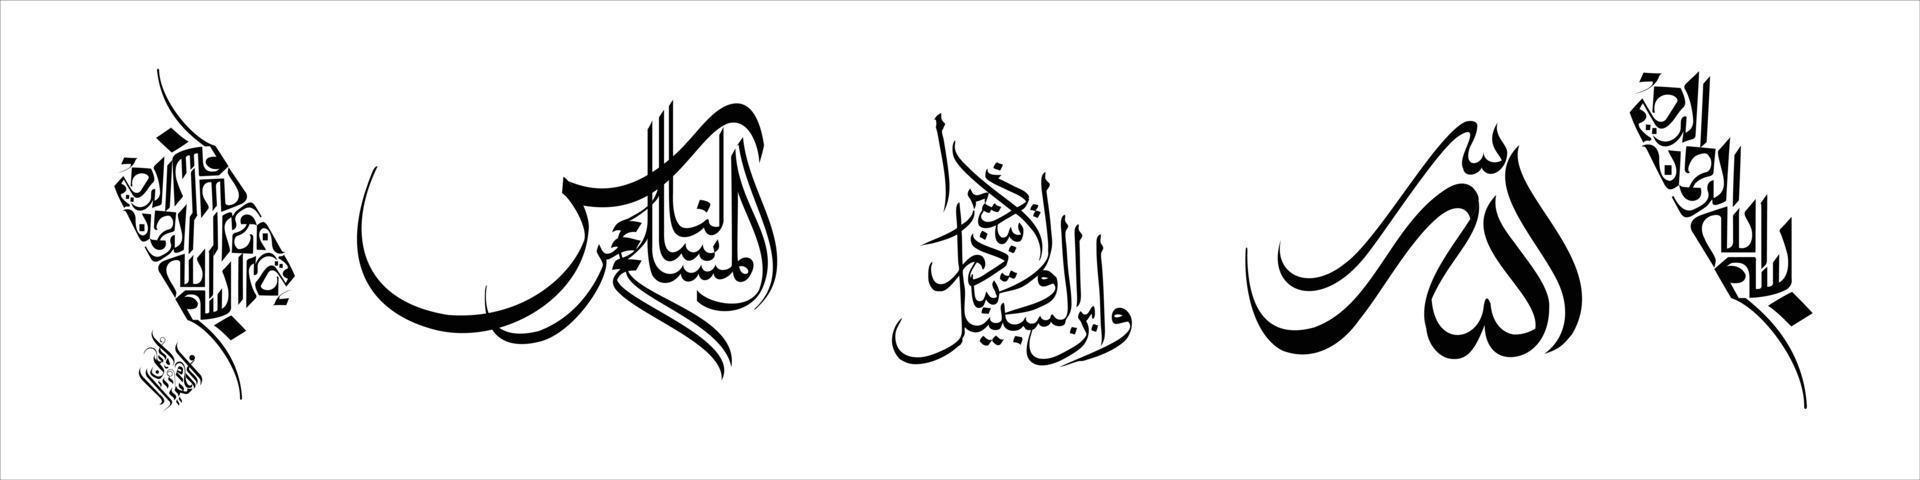 calligraphie arabe créative, illustration vectorielle vecteur